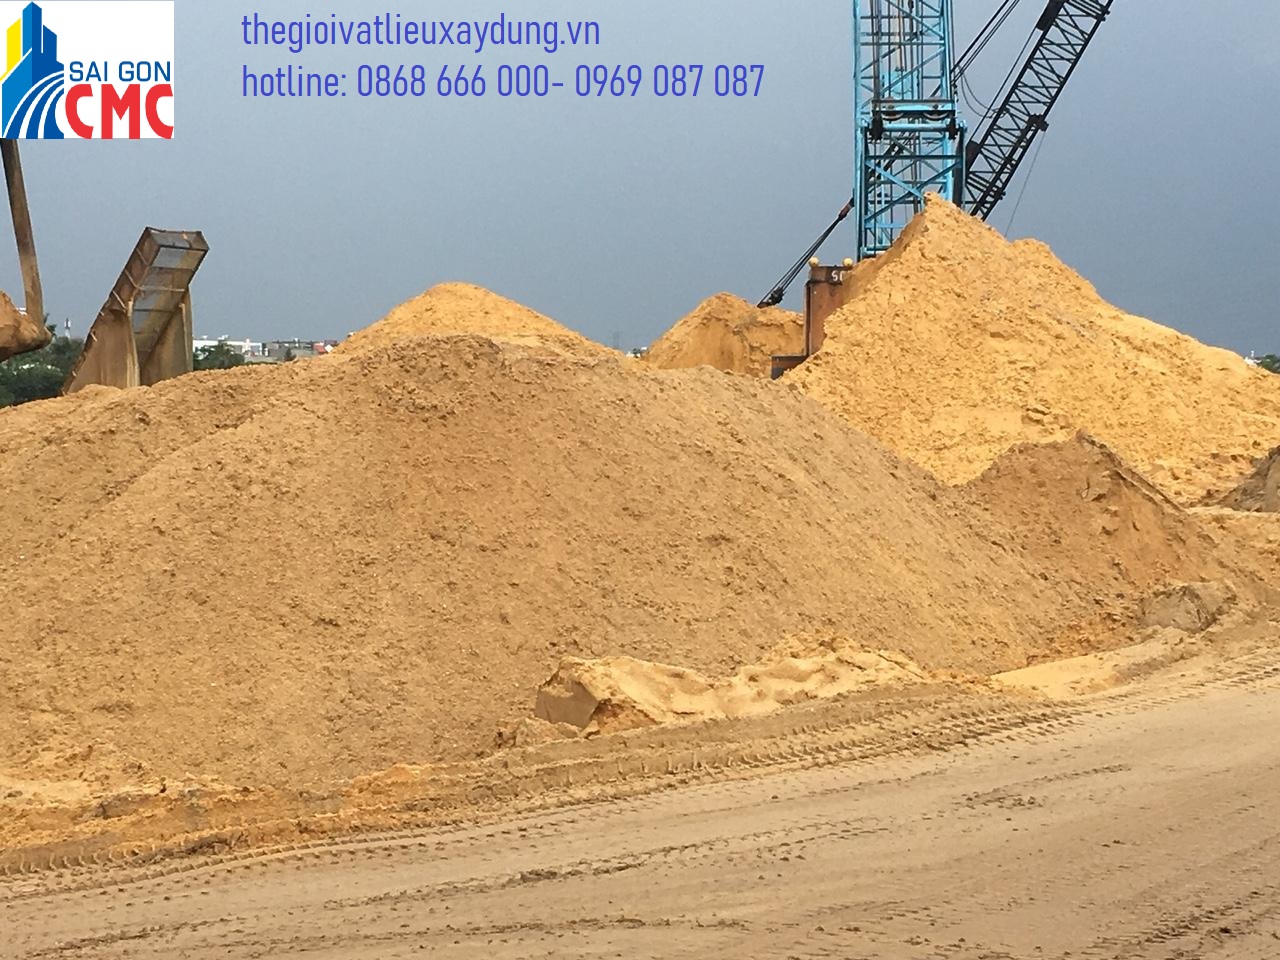 Cát san lấp là loại cát xây dựng được sử dụng nhiều trong các công trình xây dựng